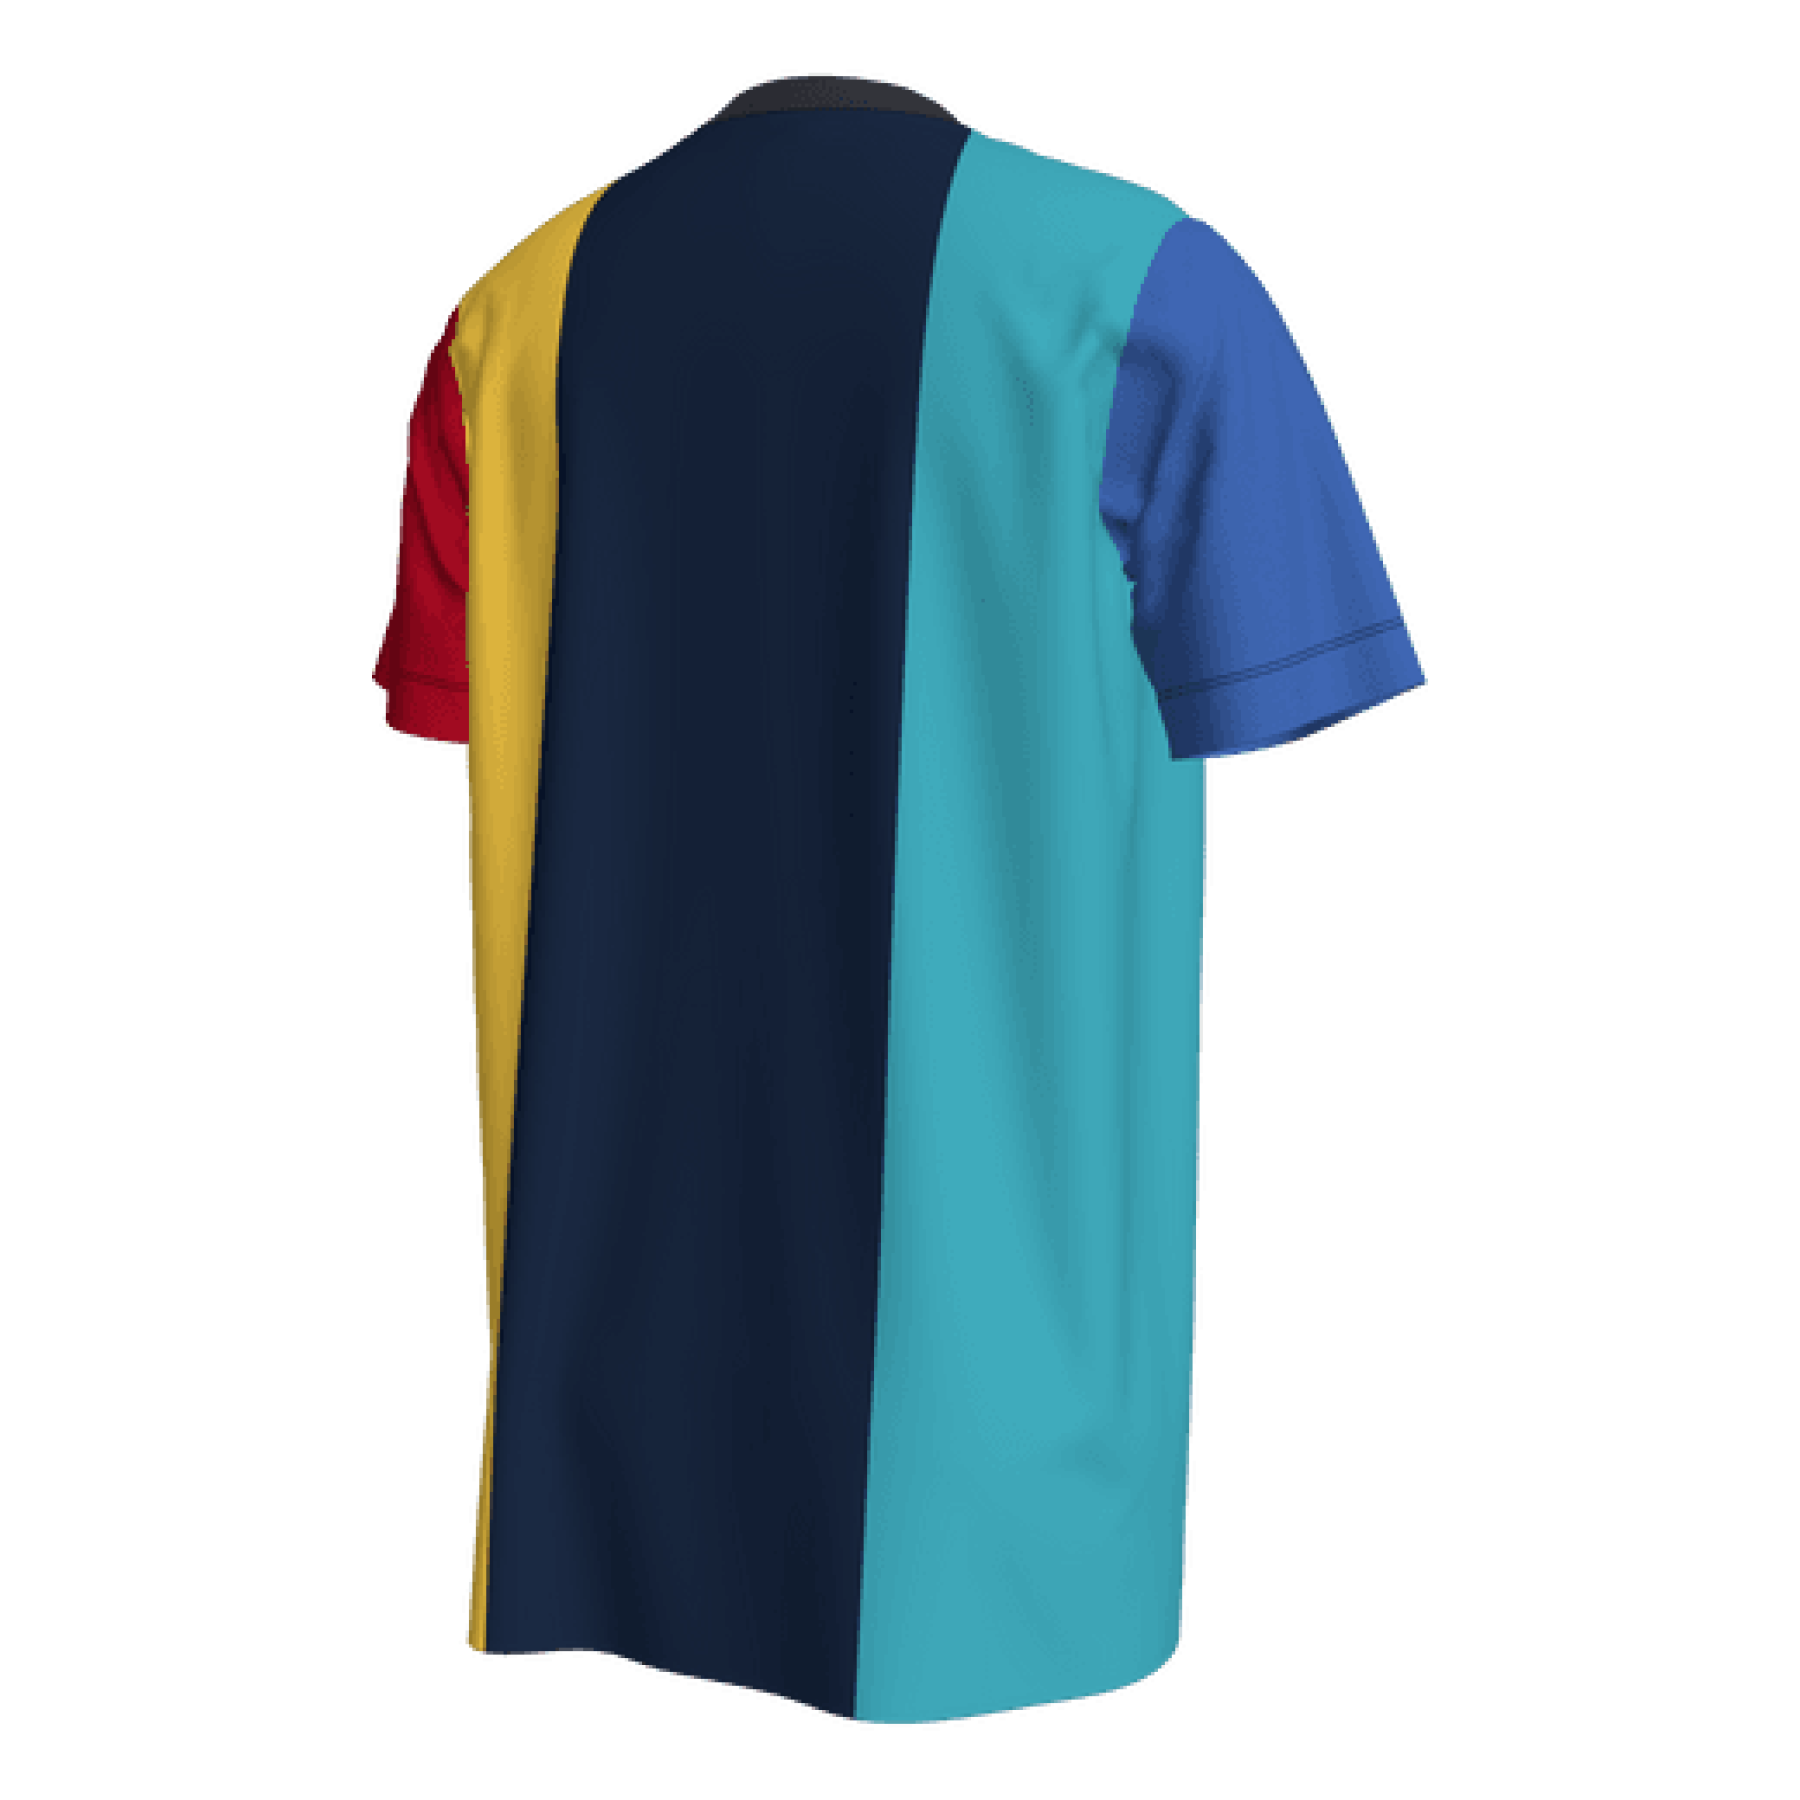 Camiseta para niños al aire libre FC Barcelone B Voice 2022/23